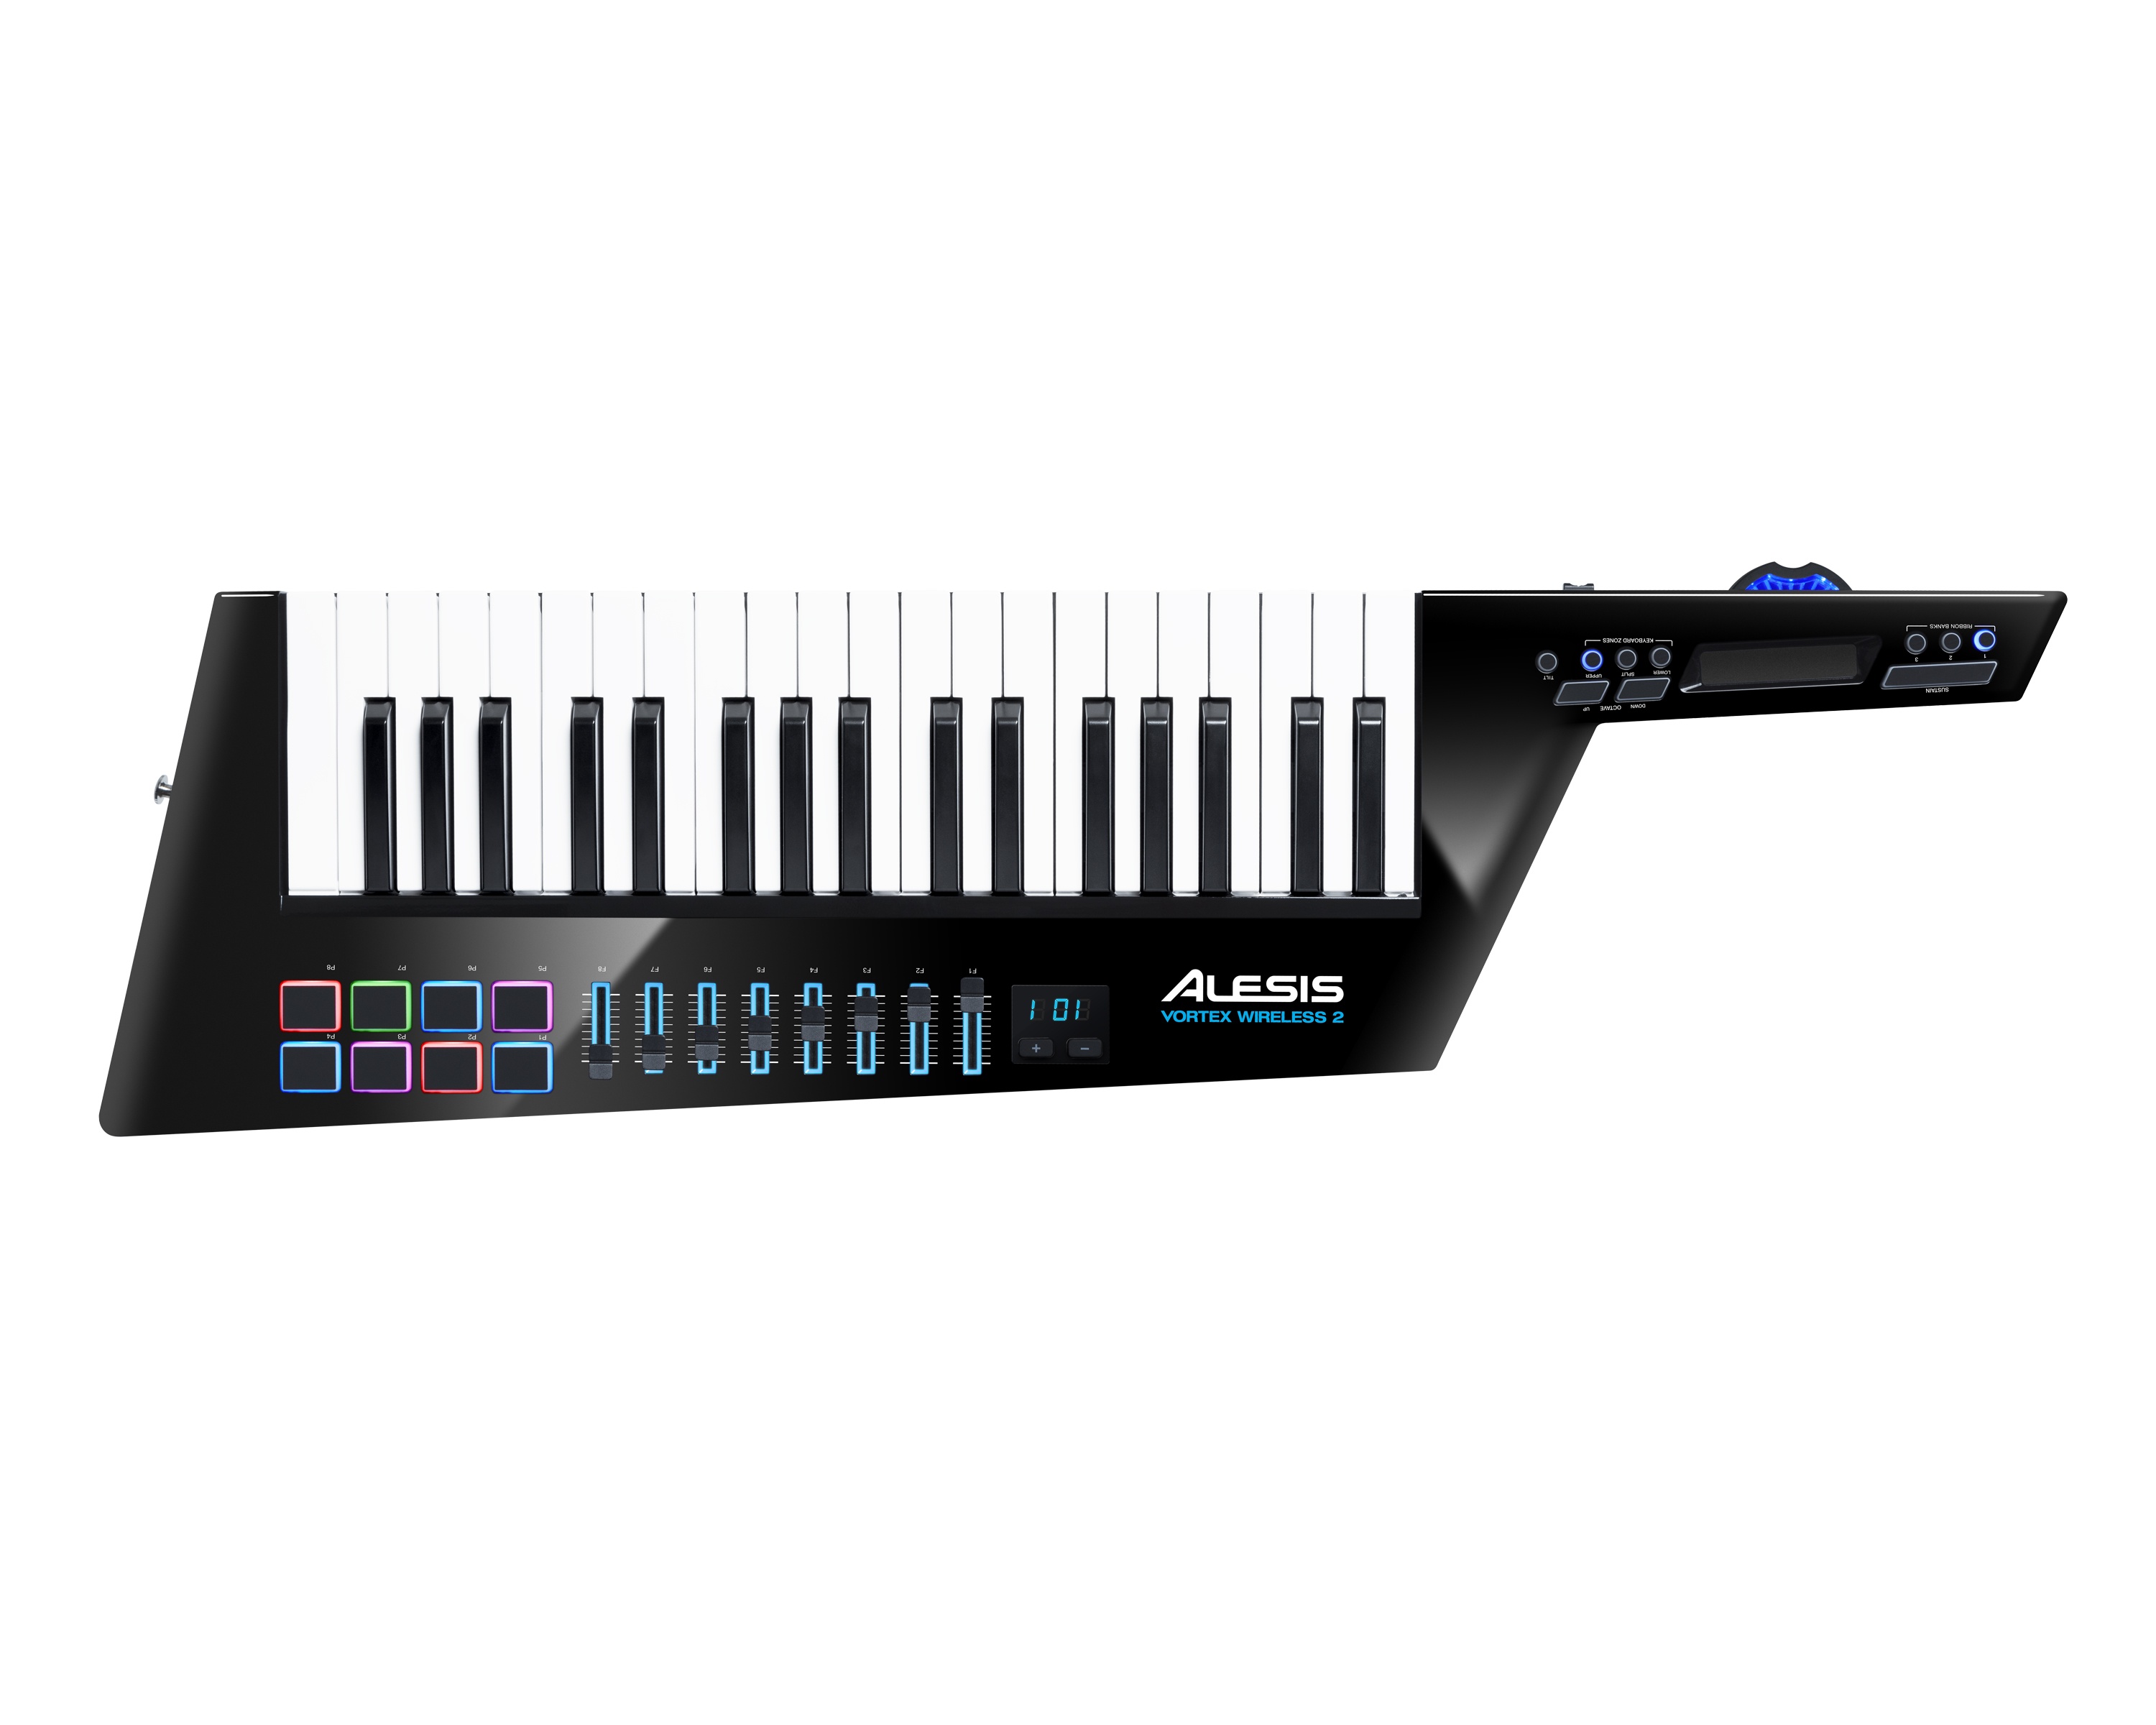 Play like a rockstar with Alesis’ MIDI controller in keytar form